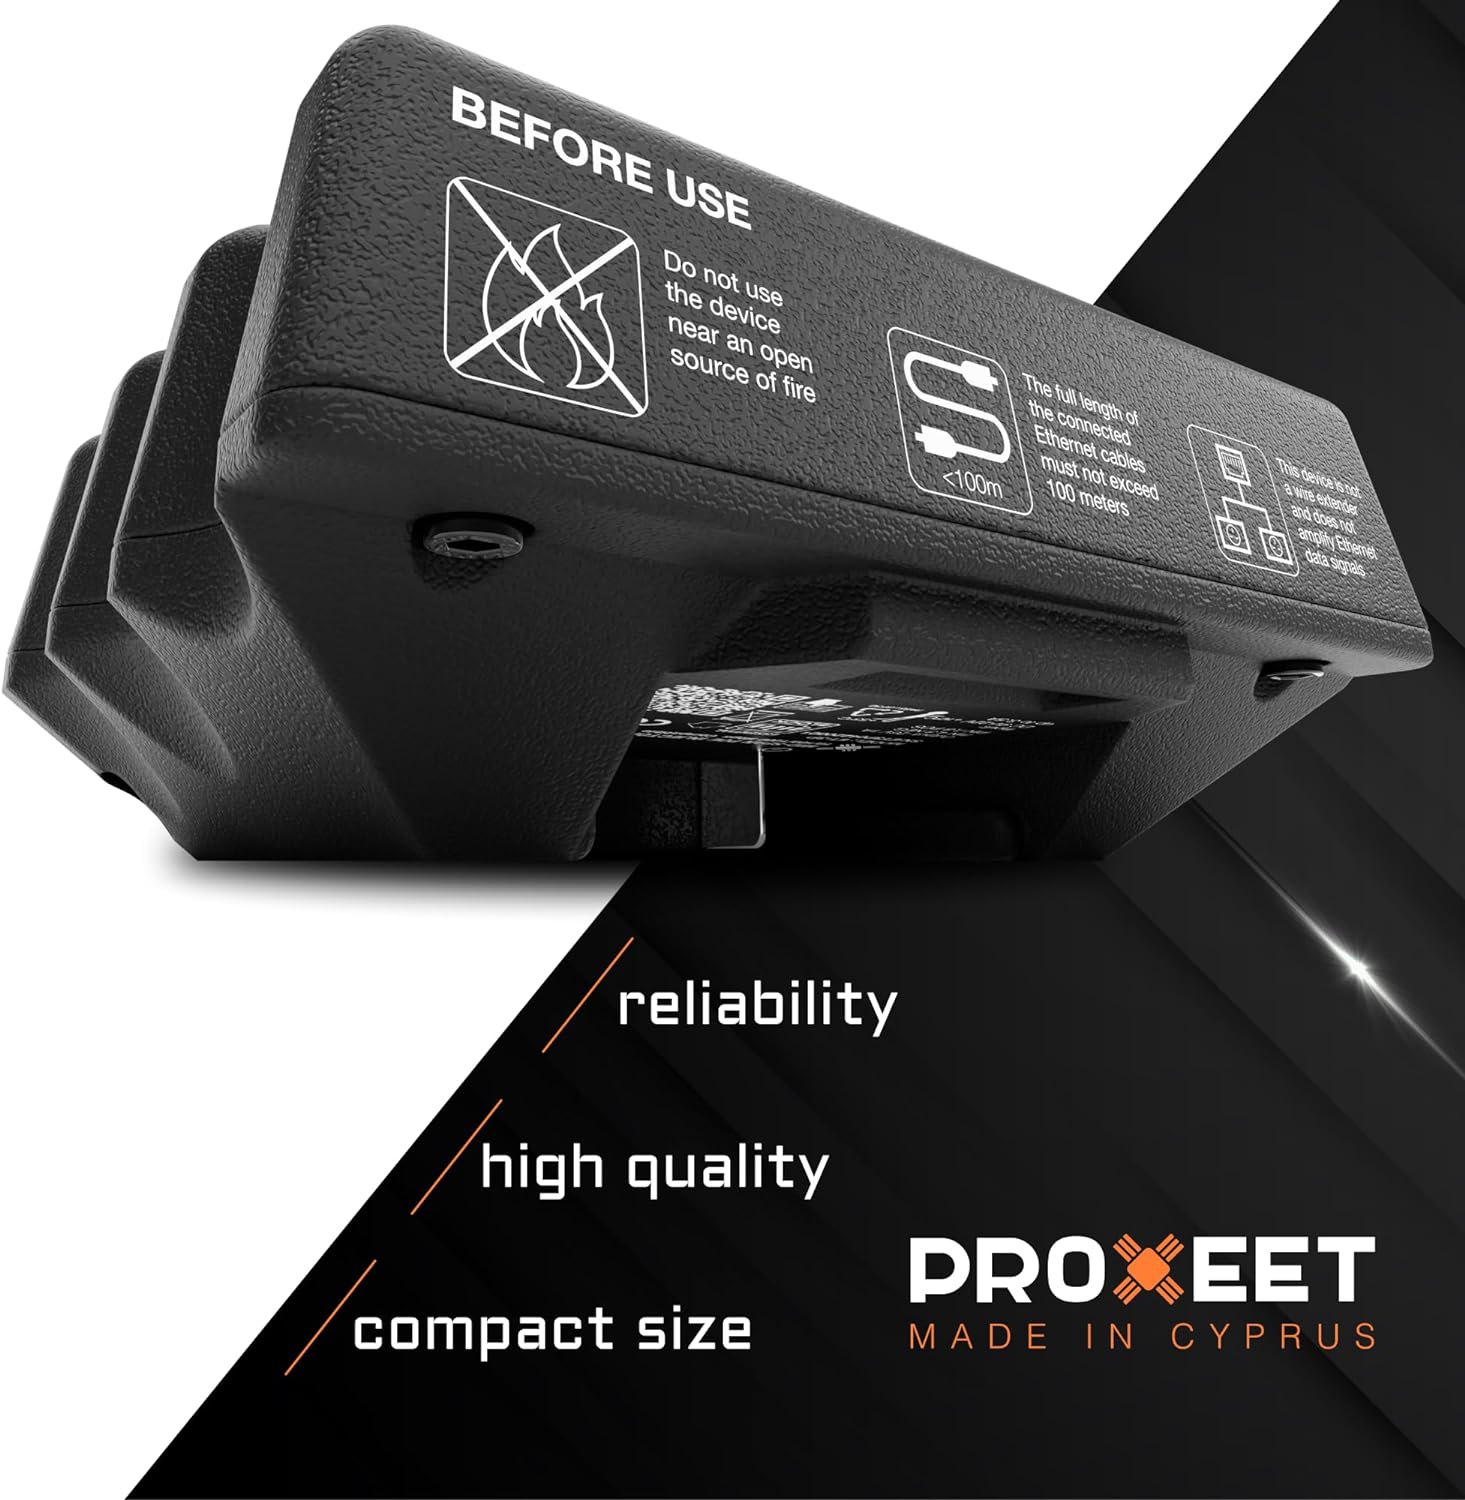 PROXEET ET-2C: Compact Design, Reliable Performance